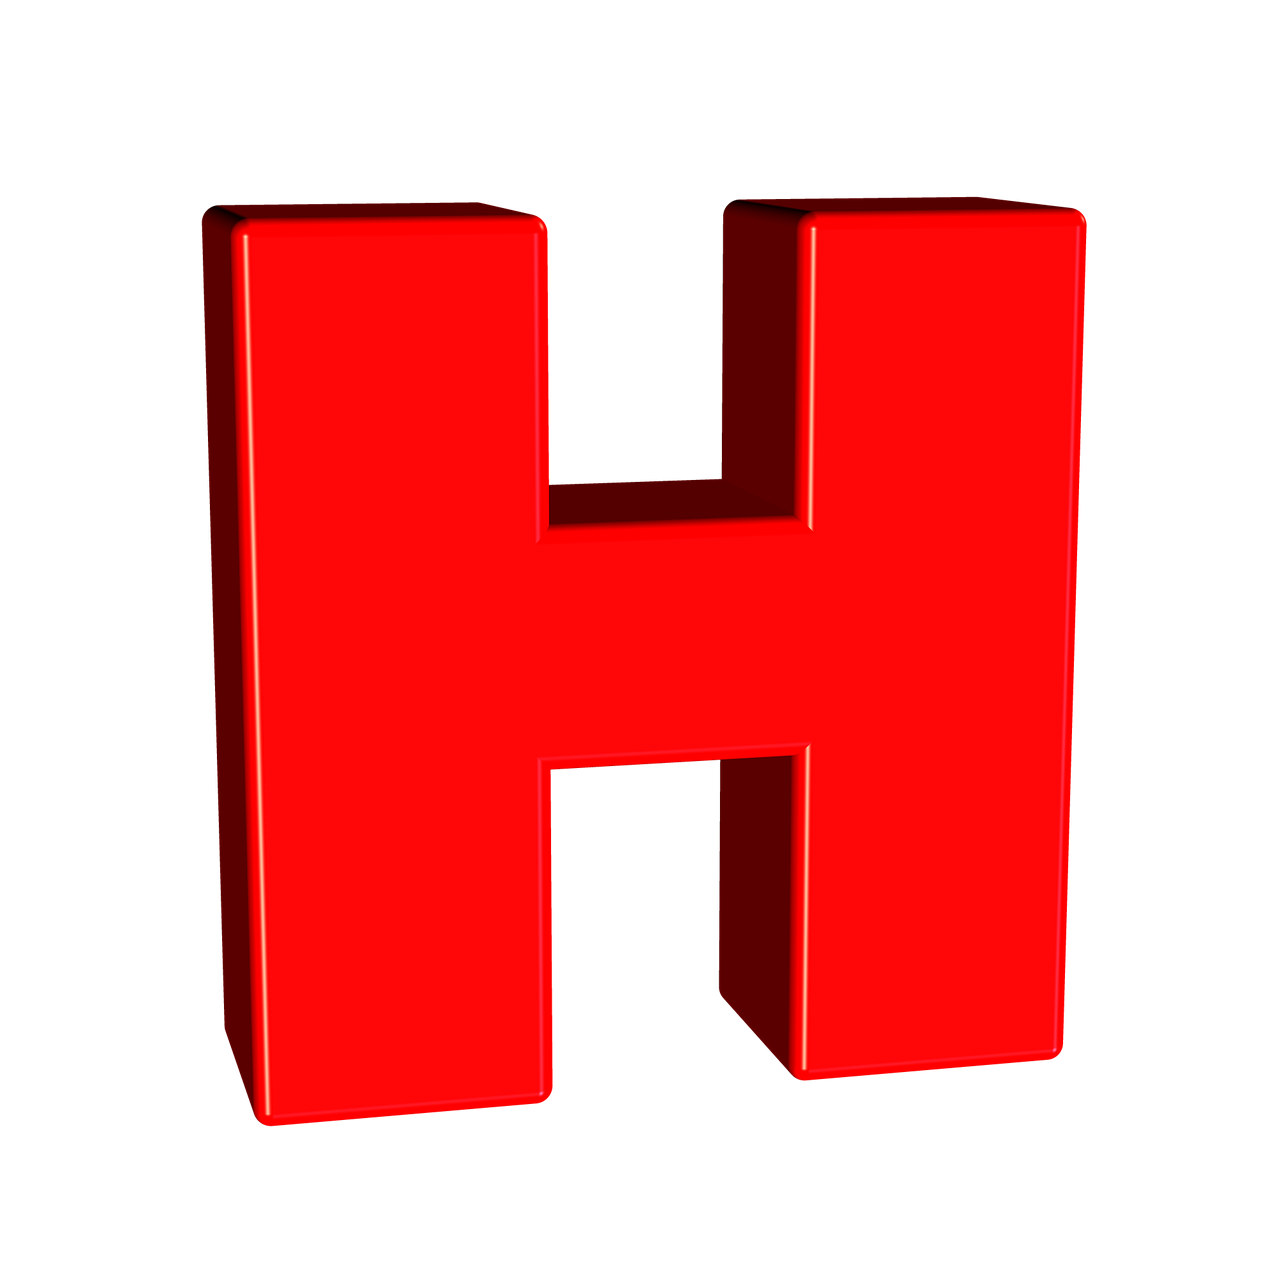 Объемная буква н. Буква h. Объемная буква h. Красная объемная буква н.